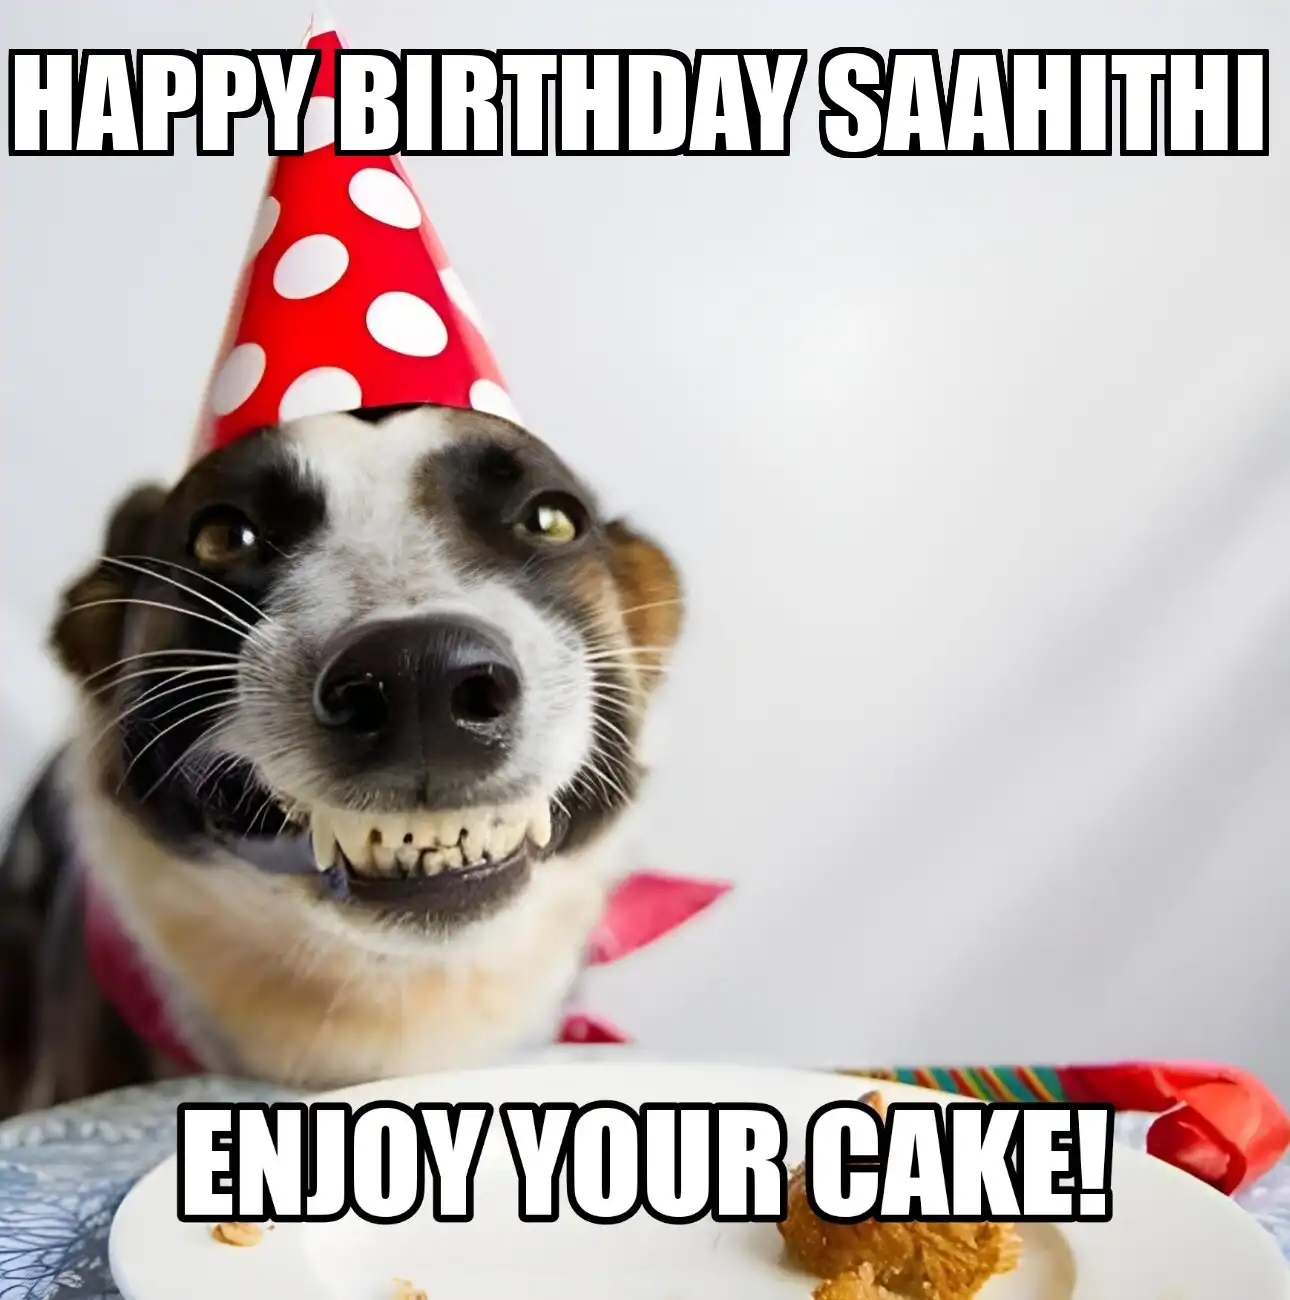 Happy Birthday Saahithi Enjoy Your Cake Dog Meme